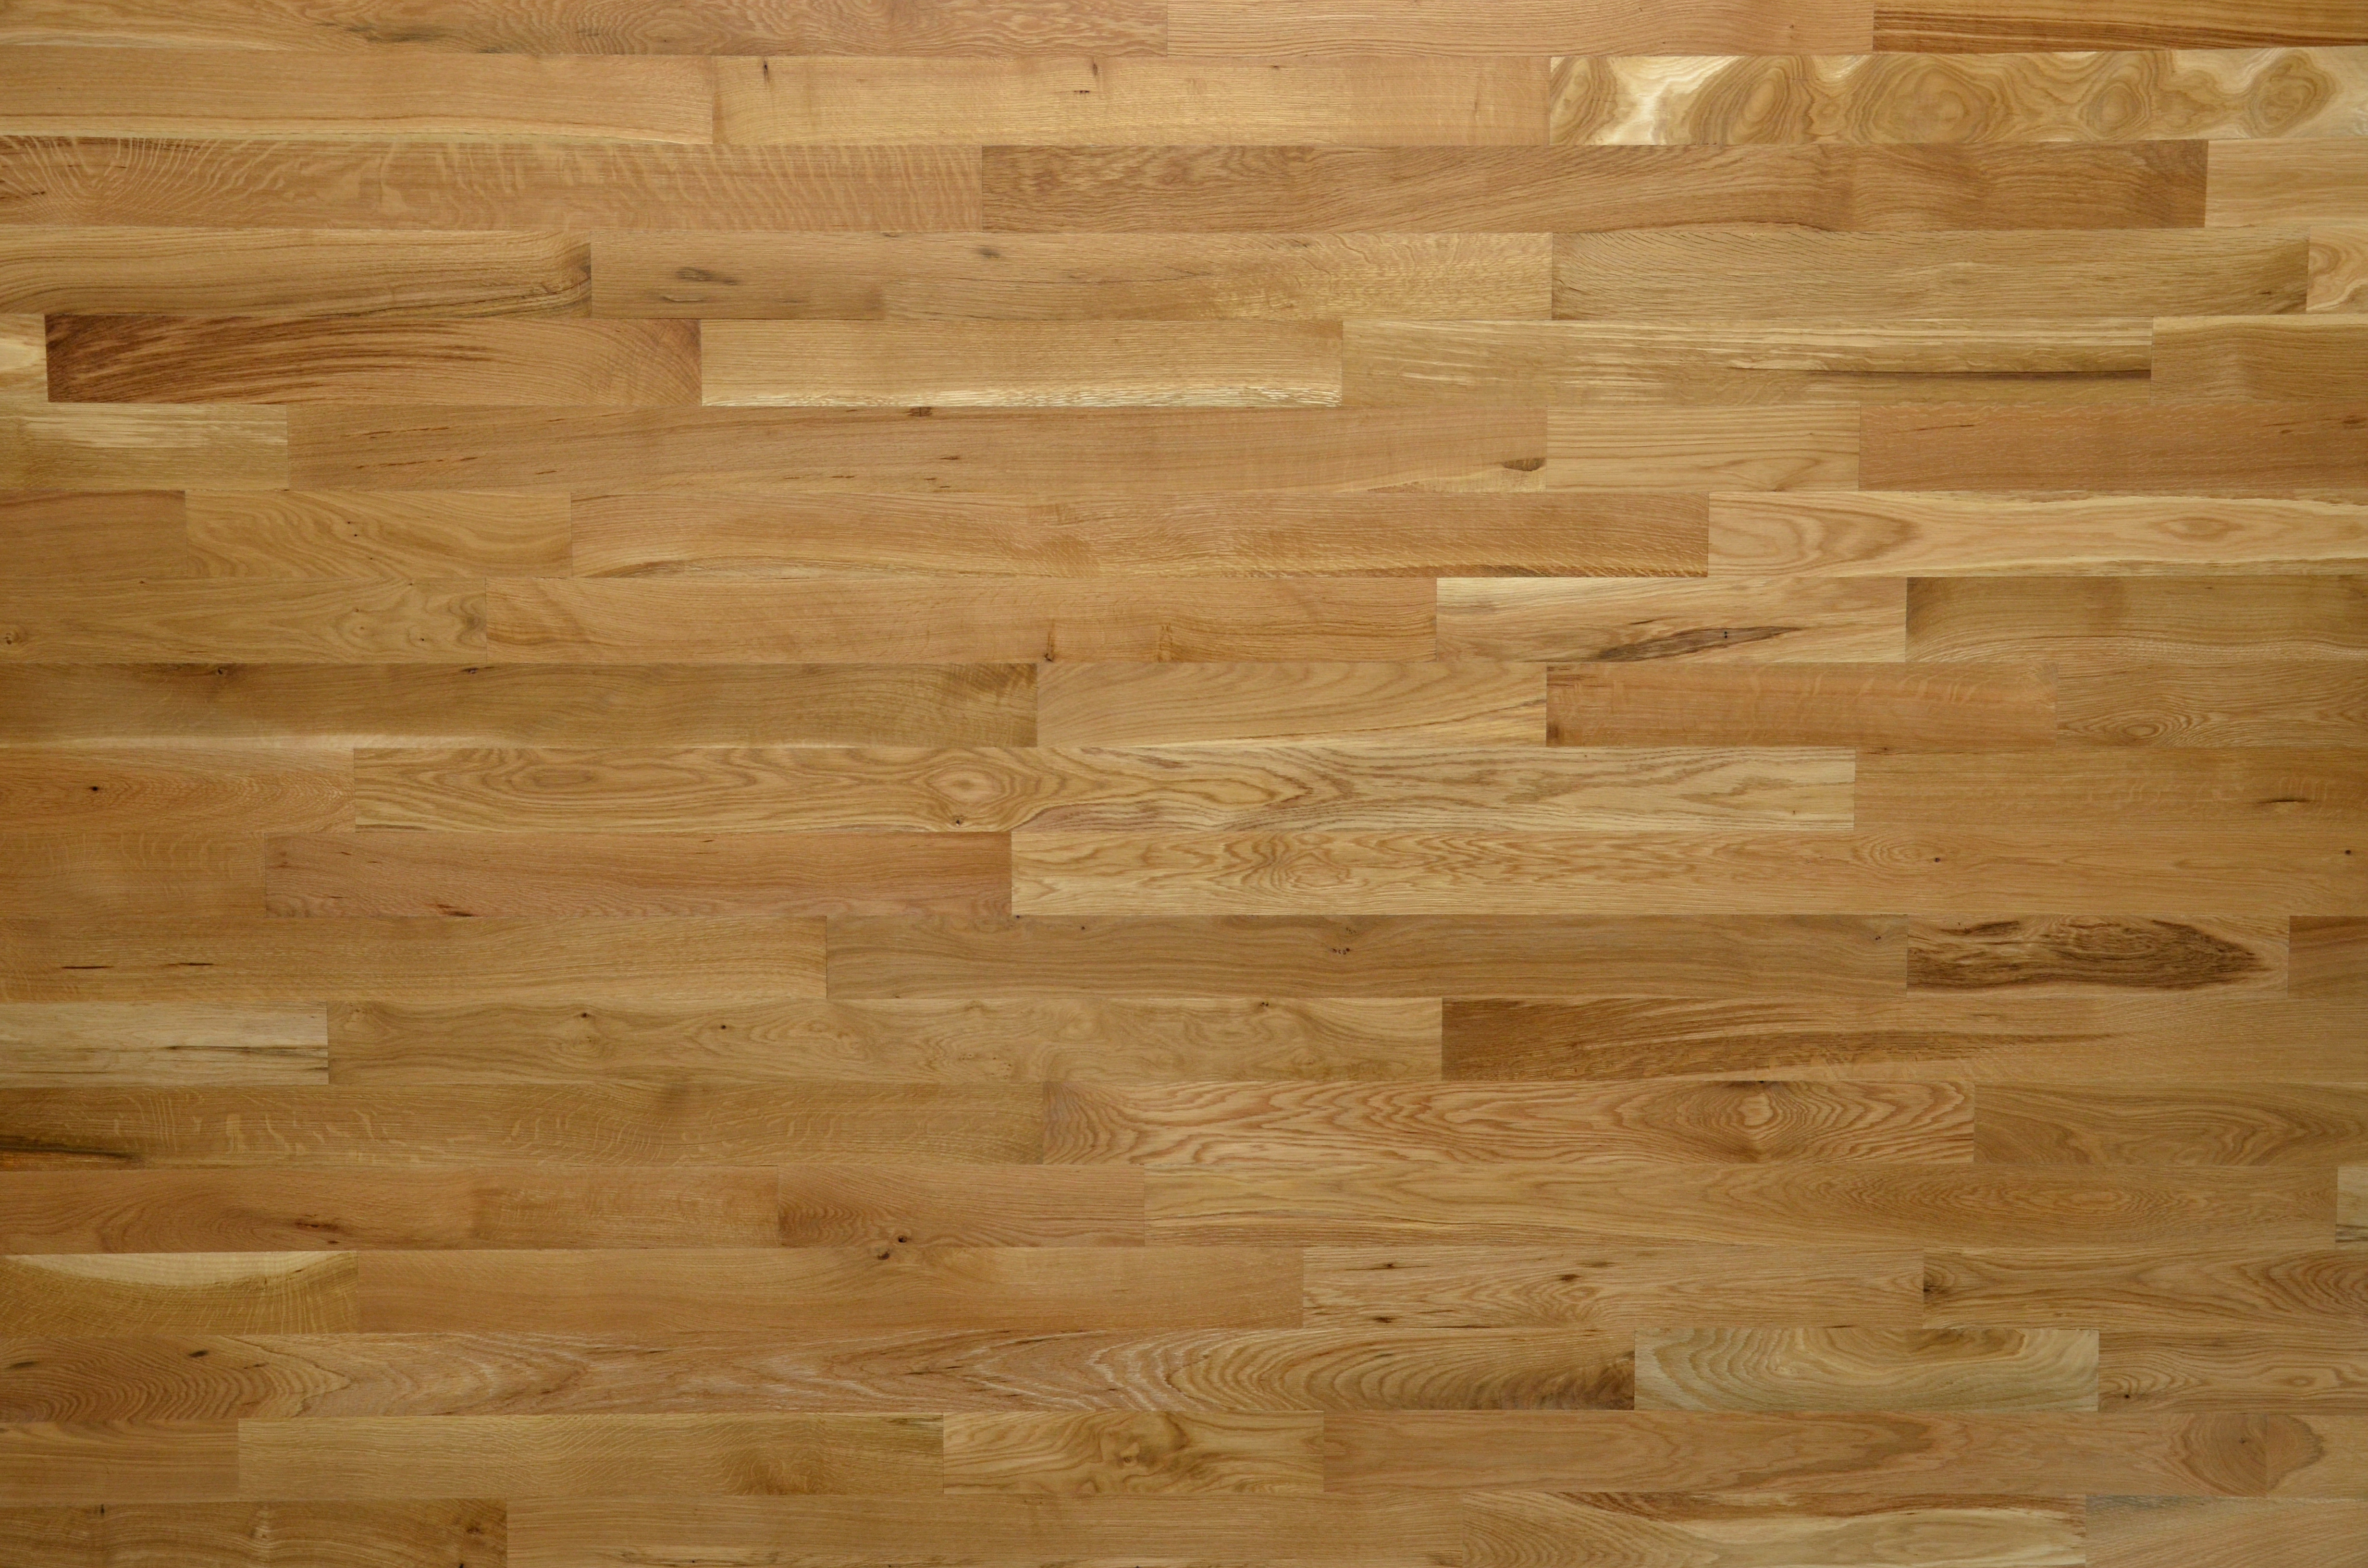 engineered hardwood flooring installation guidelines of lacrosse hardwood flooring walnut white oak red oak hickory within 1 common white oak